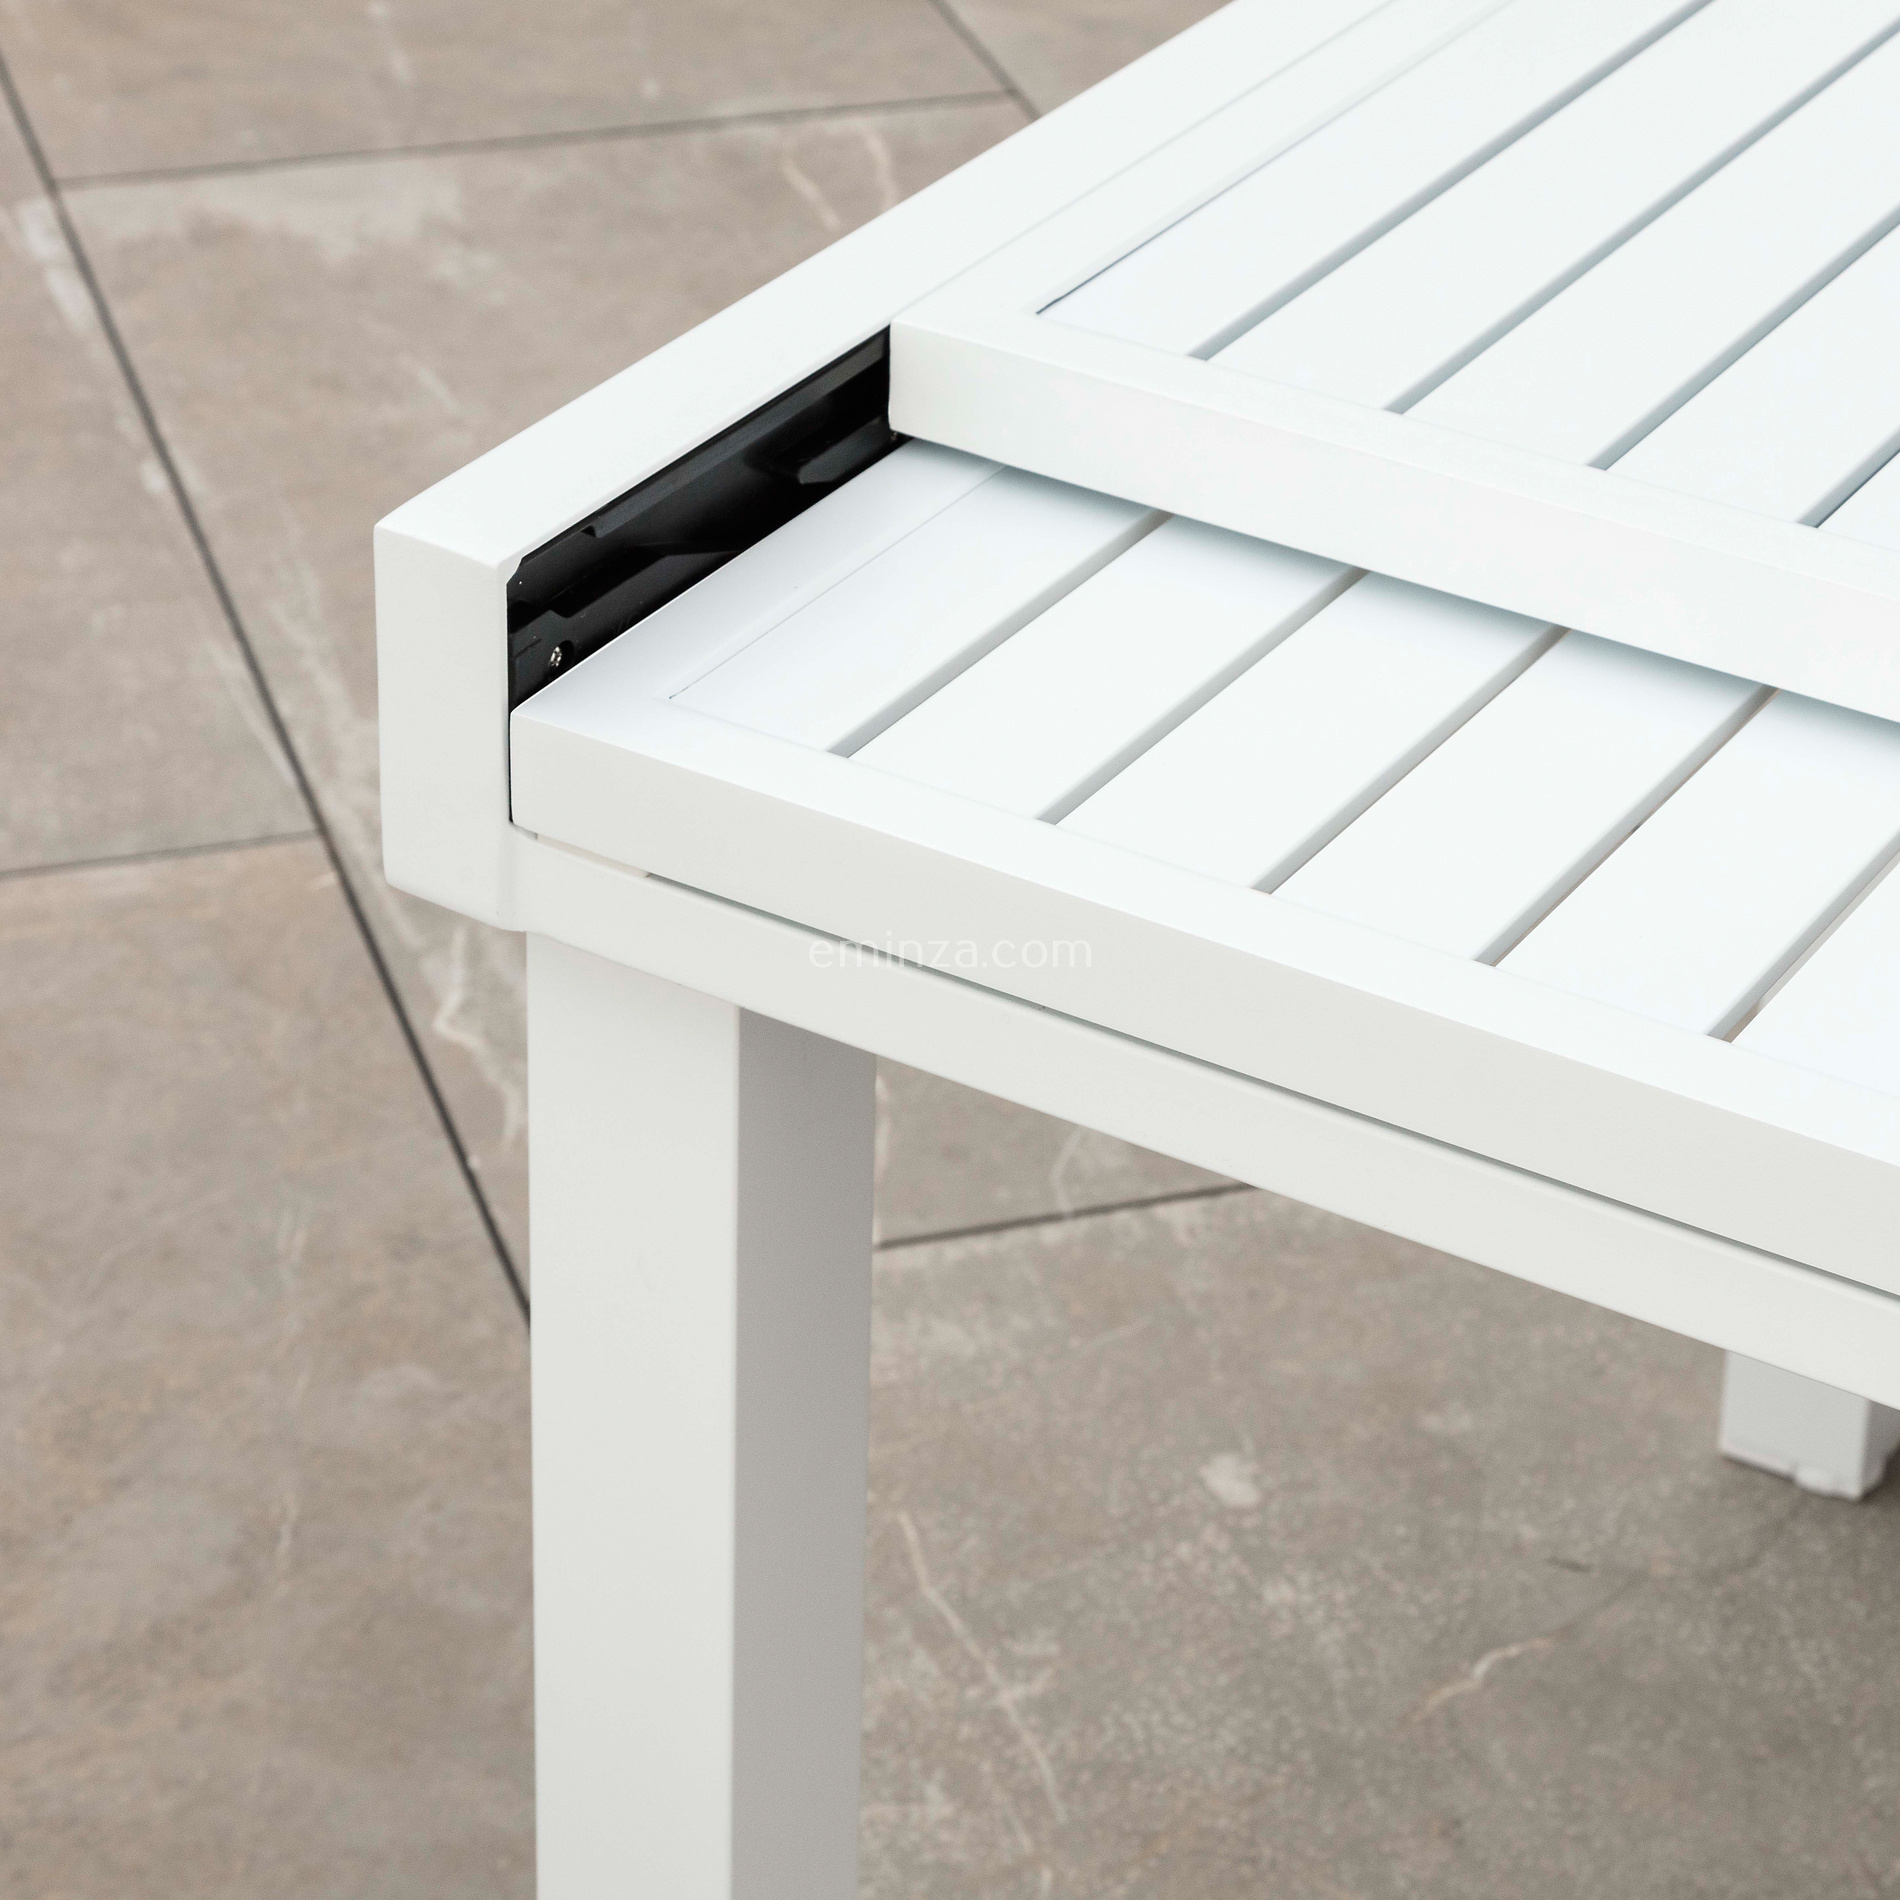 Tavolo da giardino in alluminio Bianco CUBANO ALLUNGABILE misura 220/280 x  100 BIANCO